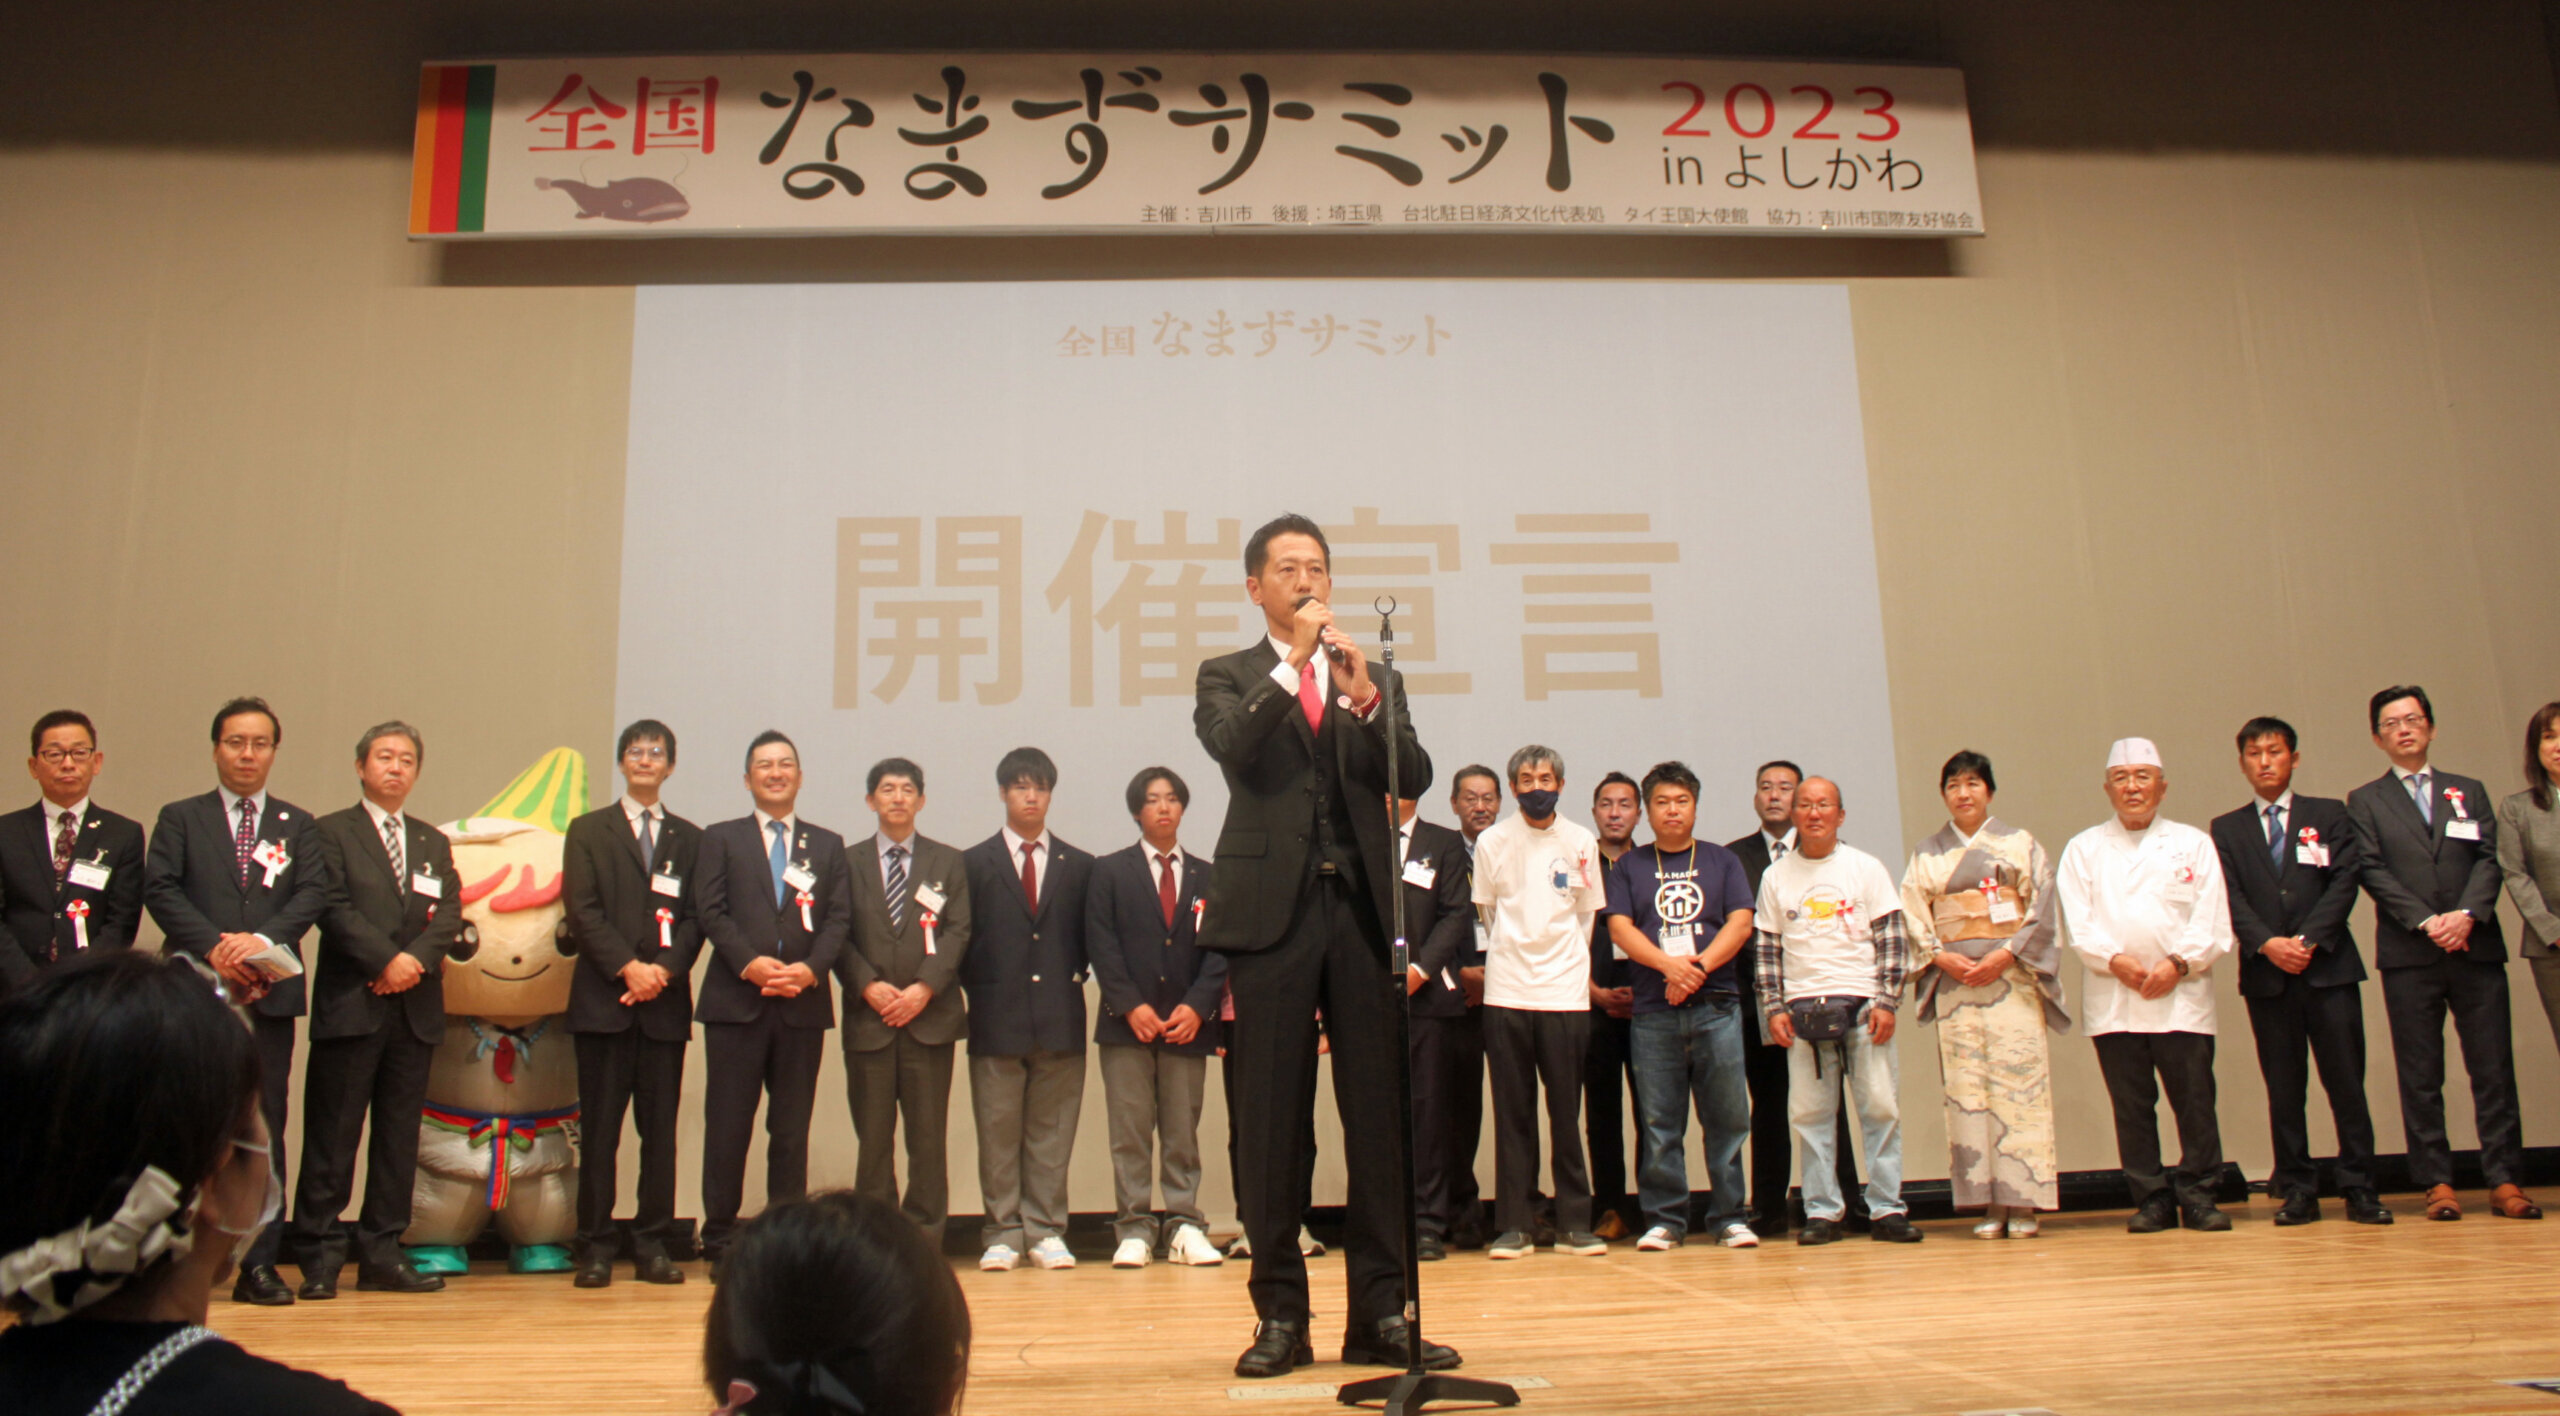 「なまずサミット」の開催を宣言する吉川市の中原恵人市長（手前中央）